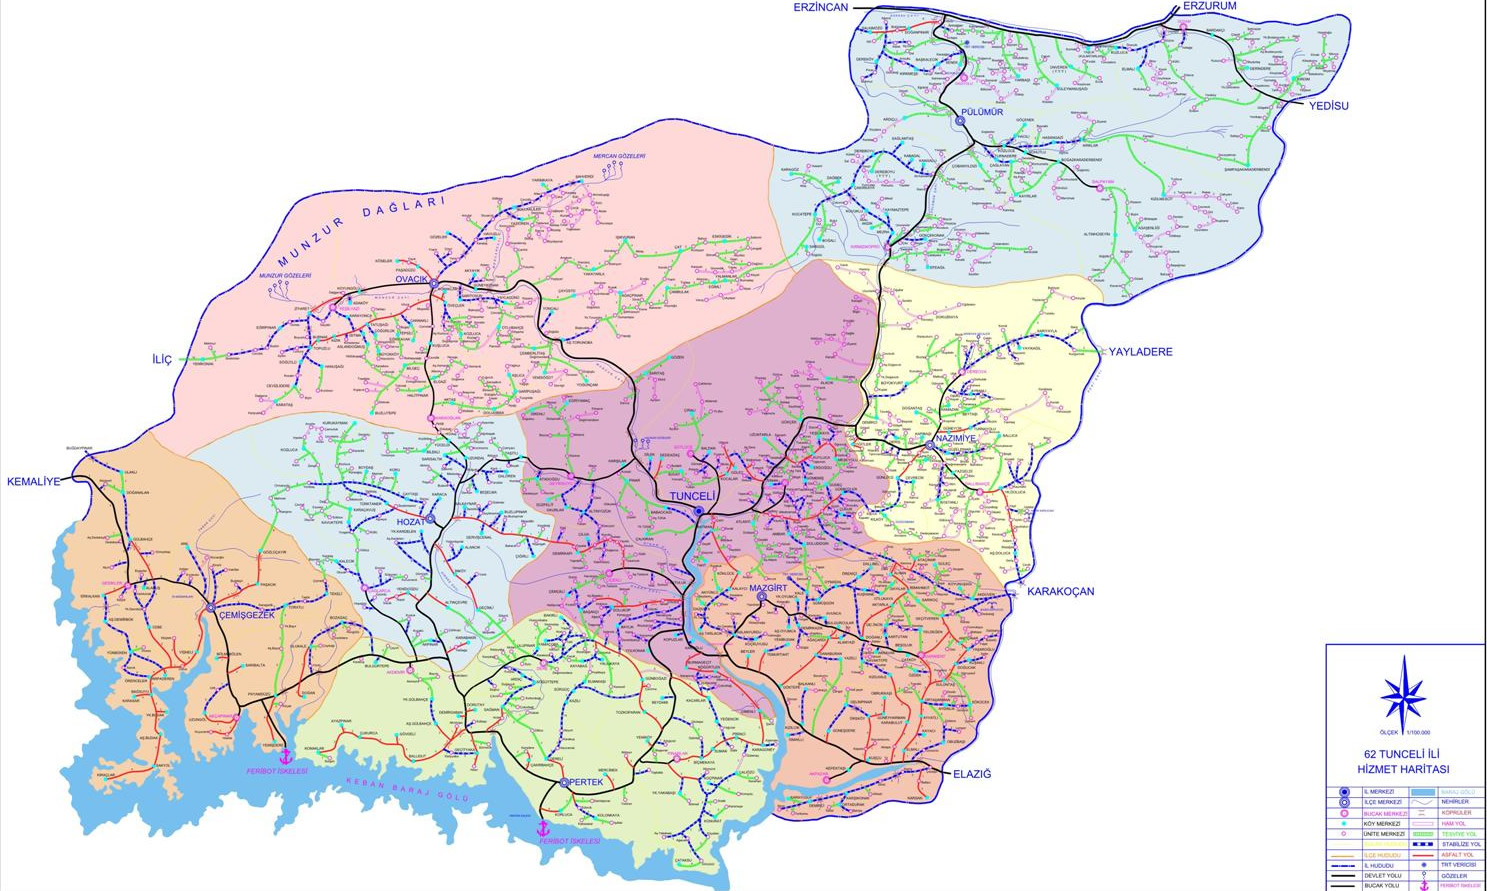 tunceli province plan